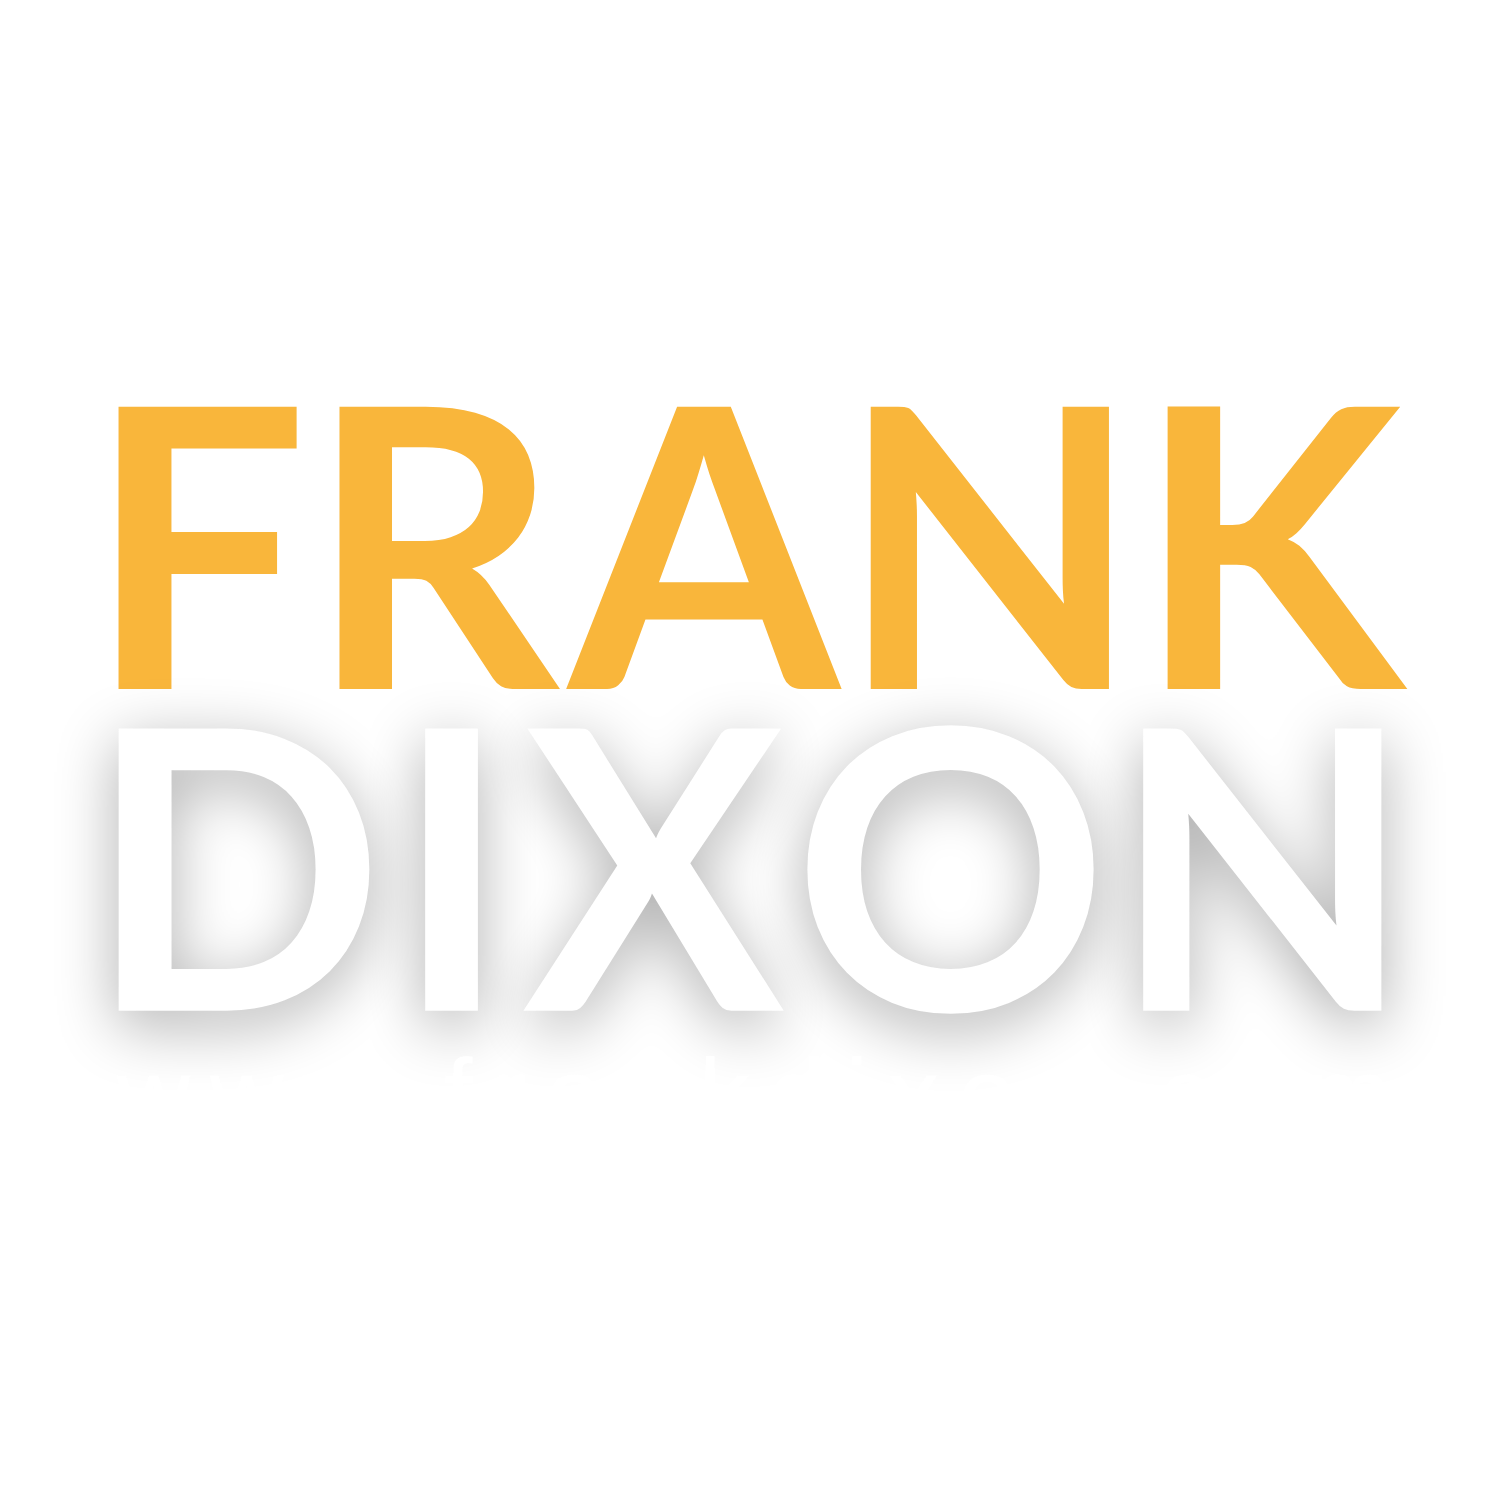 FRANKDIXON.COM